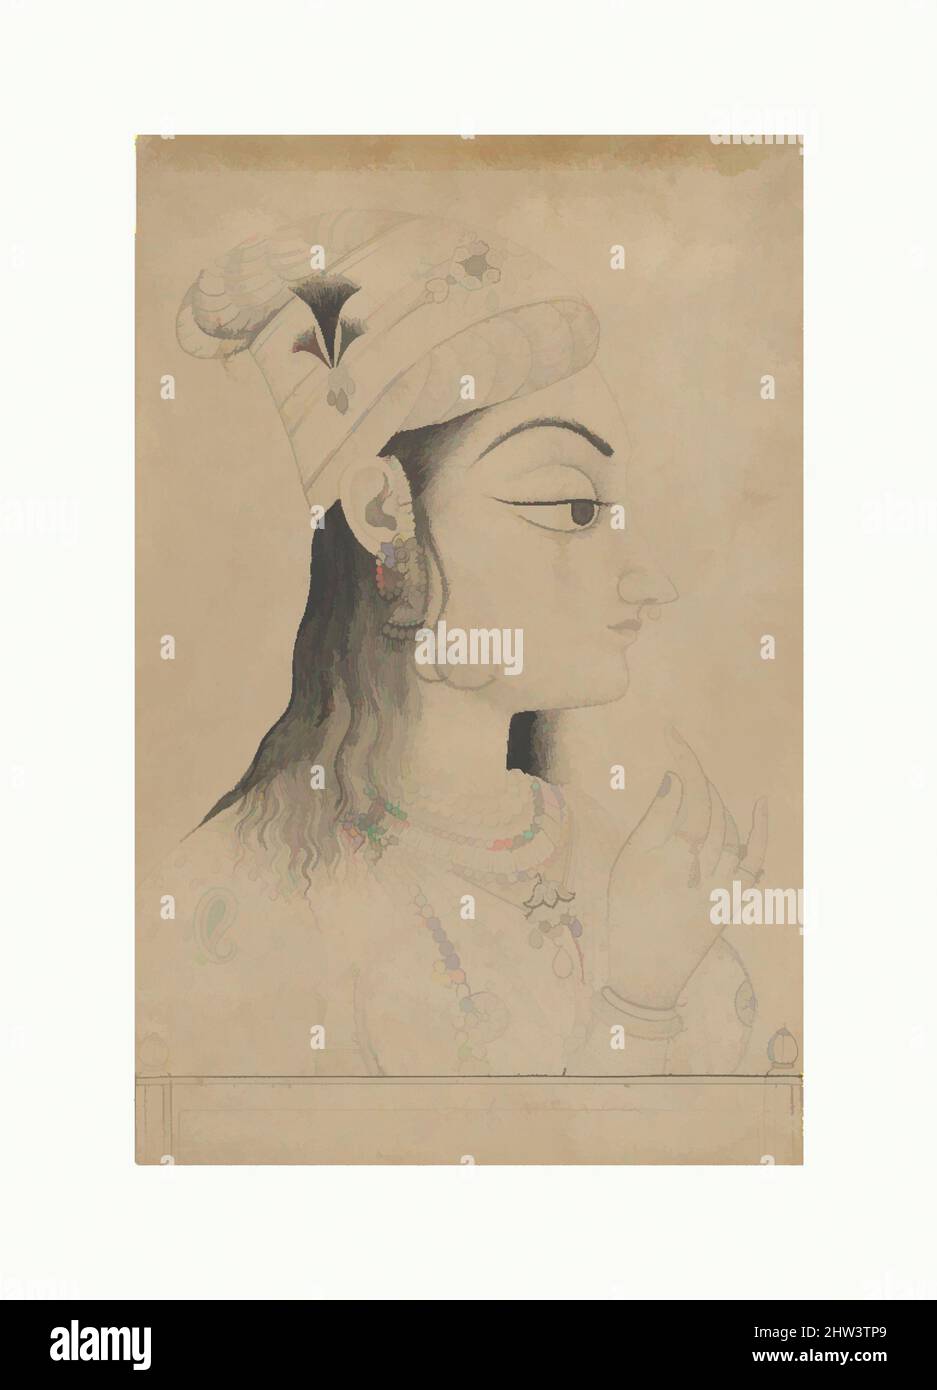 Art inspiré par une femme avec un Turban habillé comme Radha, fin 19th siècle, Inde (Rajasthan, Kishangarh), encre et lavage sur papier, image (vue): 13 3/8 x 8 5/8 po. (34 x 21,9 cm), peintures, cette femme du tribunal de Kishangarh est habillée comme Radha, amant de Krishna. La tête allongée et, les œuvres classiques modernisées par Artotop avec une touche de modernité. Formes, couleur et valeur, impact visuel accrocheur sur l'art émotions par la liberté d'œuvres d'art d'une manière contemporaine. Un message intemporel qui cherche une nouvelle direction créative. Artistes qui se tournent vers le support numérique et créent le NFT Artotop Banque D'Images